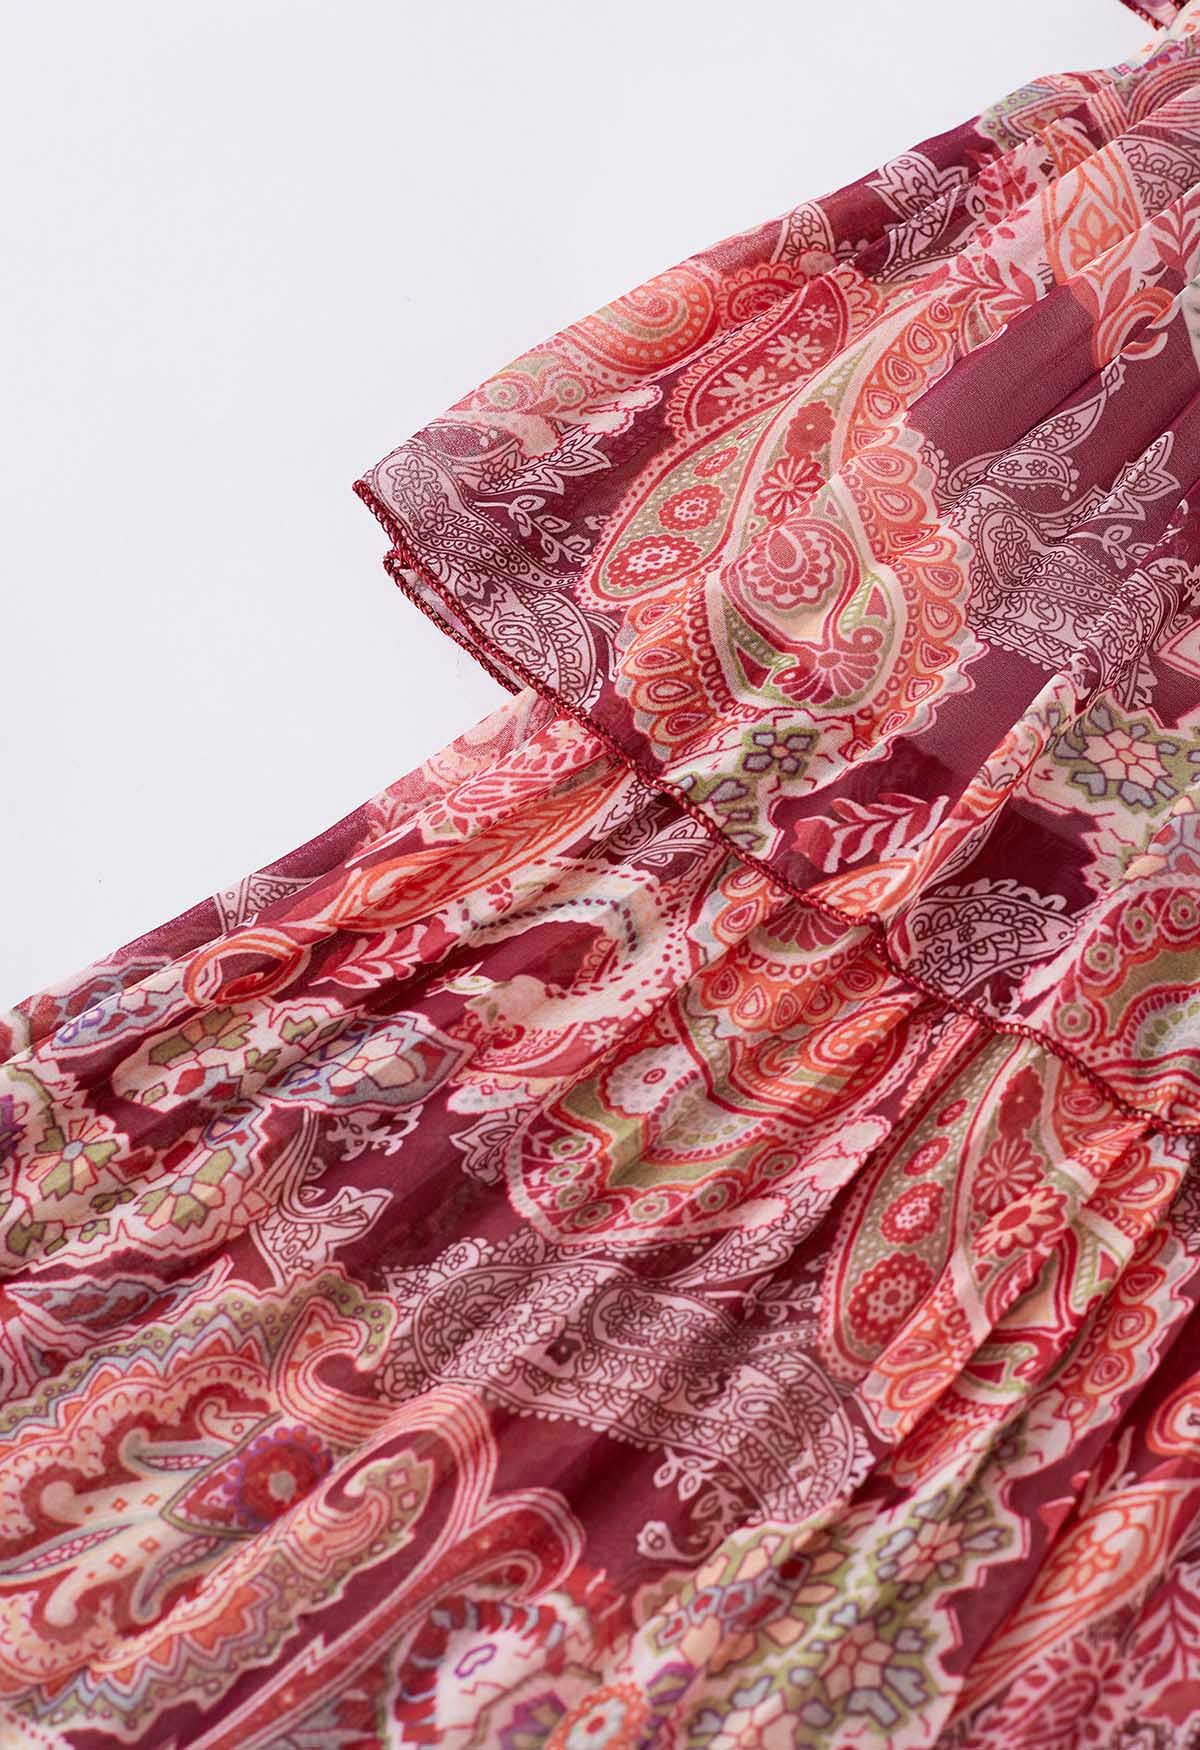 Gestuftes Chiffonkleid mit Paisley-Print und Gürtel in Rot